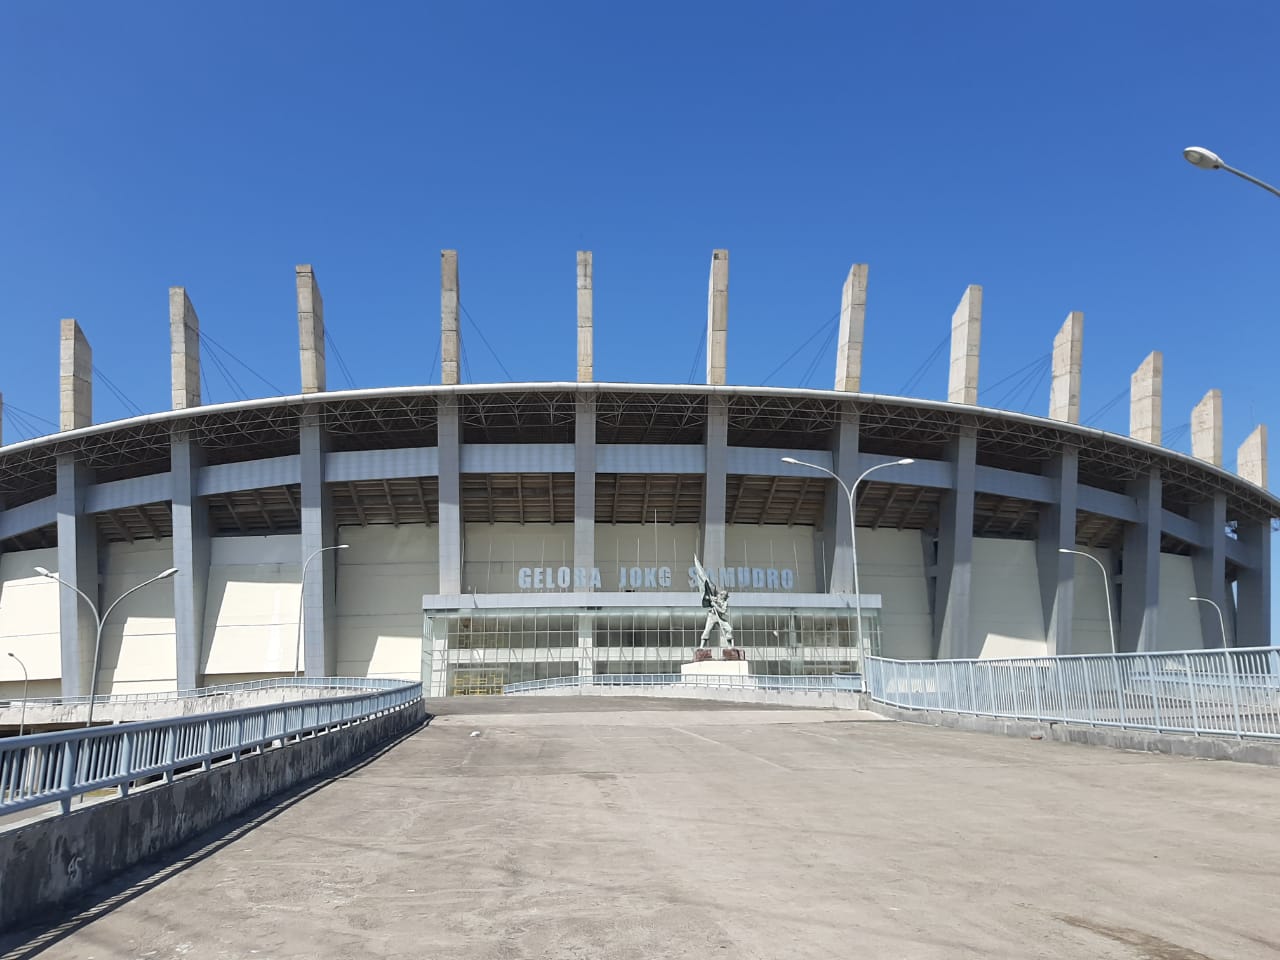 Wabup Gresik Sebut, Gelora Joko Samudro Stadion Terbaik Kedua di Dunia Setelah Stadion Frankfurt Jerman